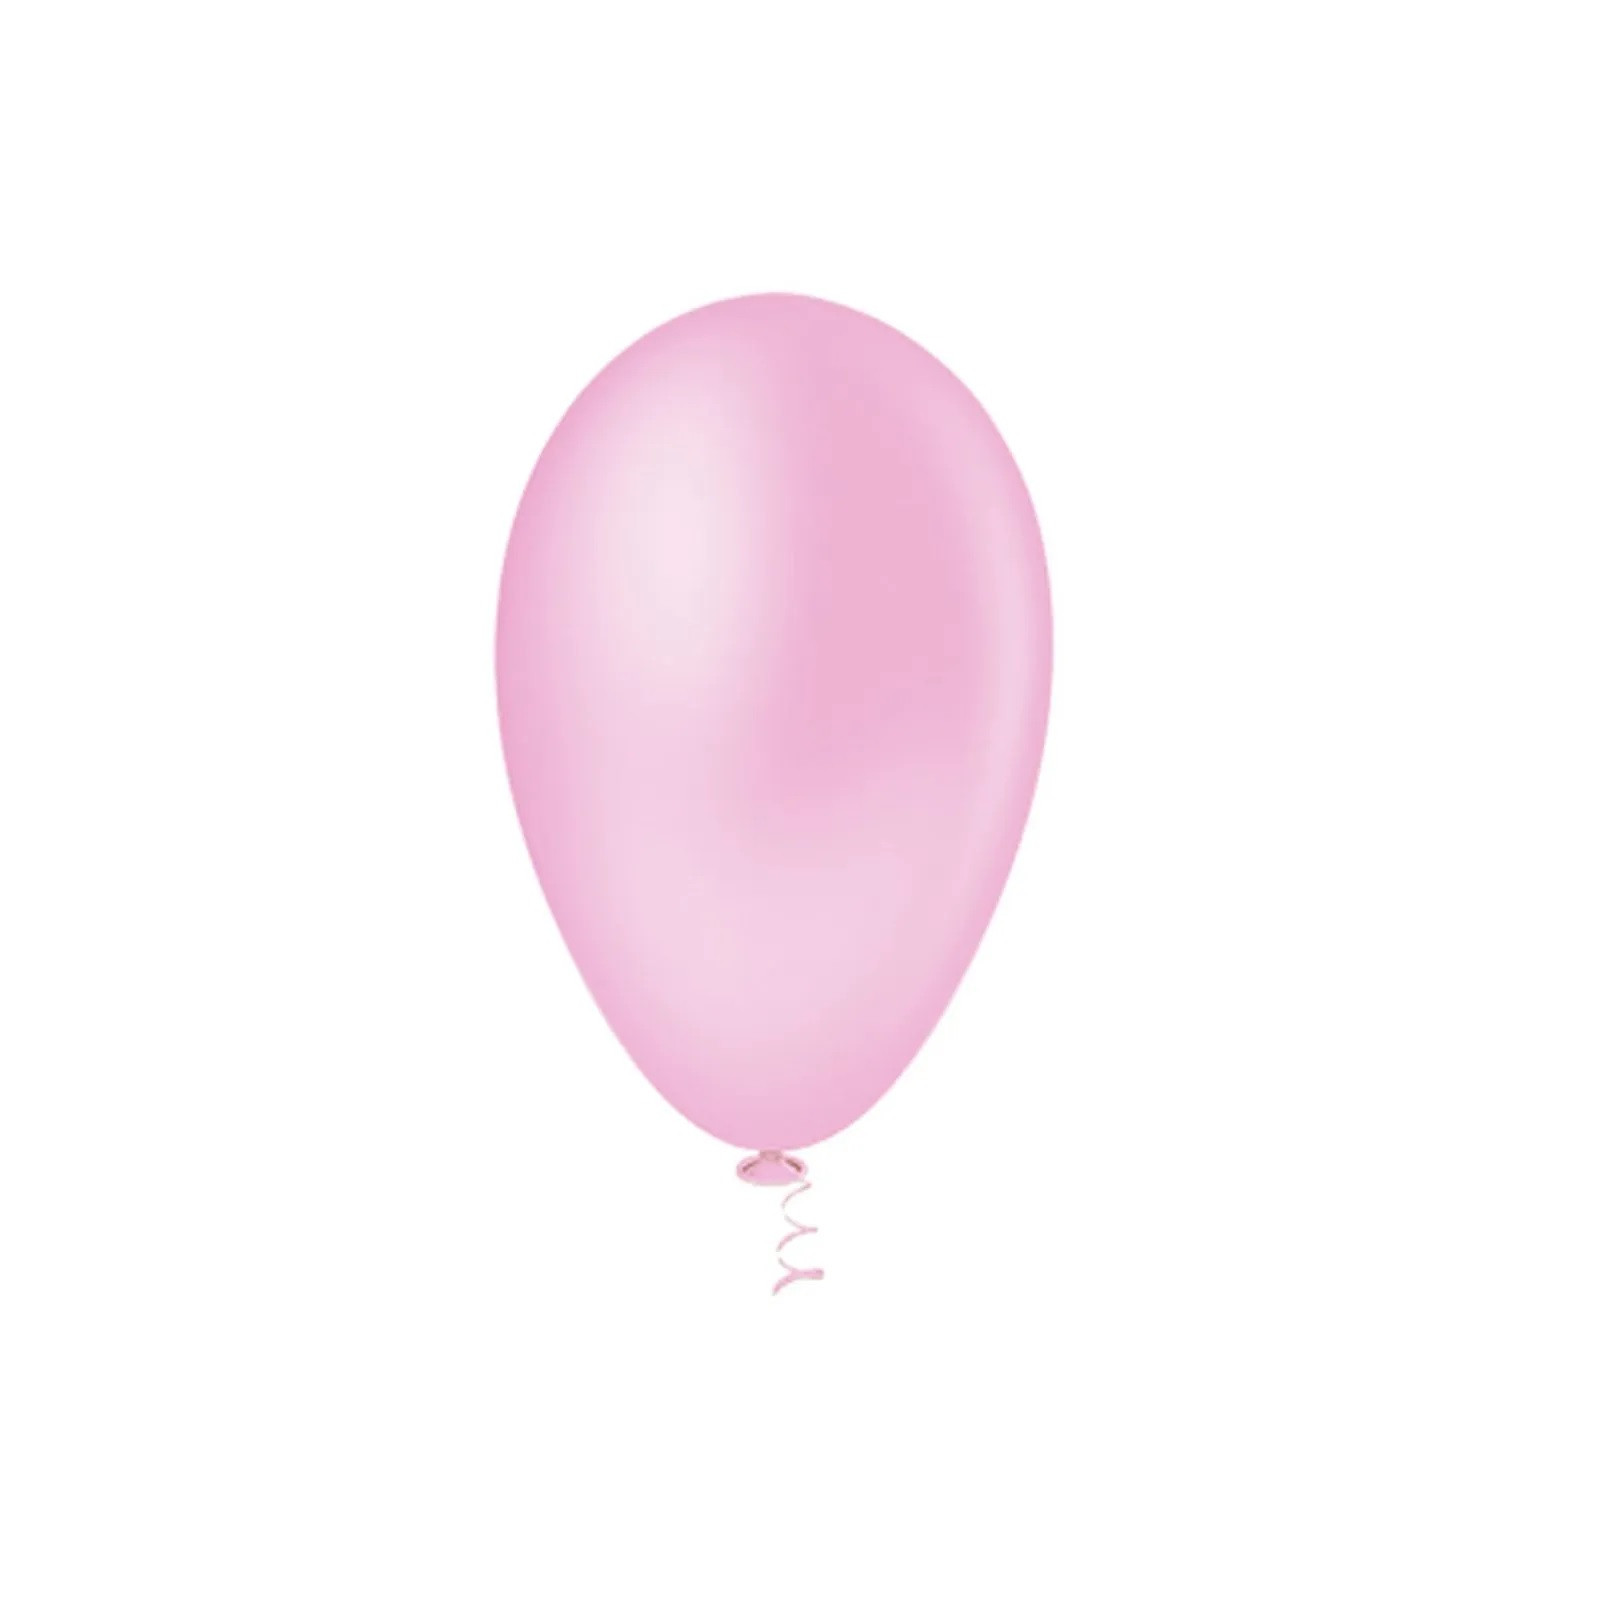 Balão Pera Liso Rosa BabyNº6.5  c /50 unid - Pic Pic